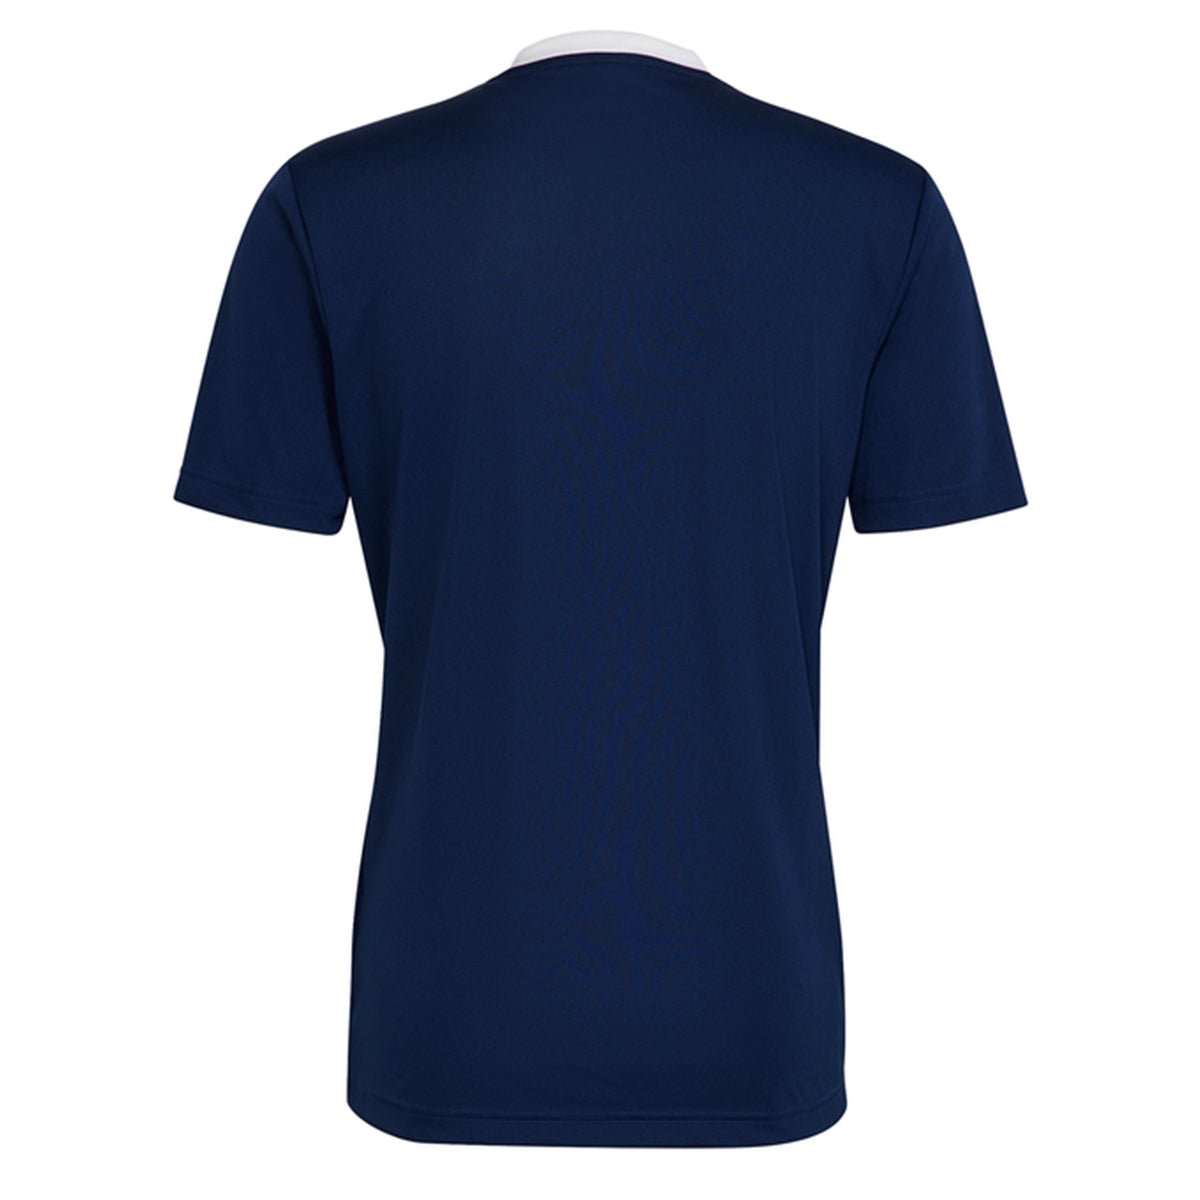 Wooburn Narkovians CC Adidas Training Shirt: Navy